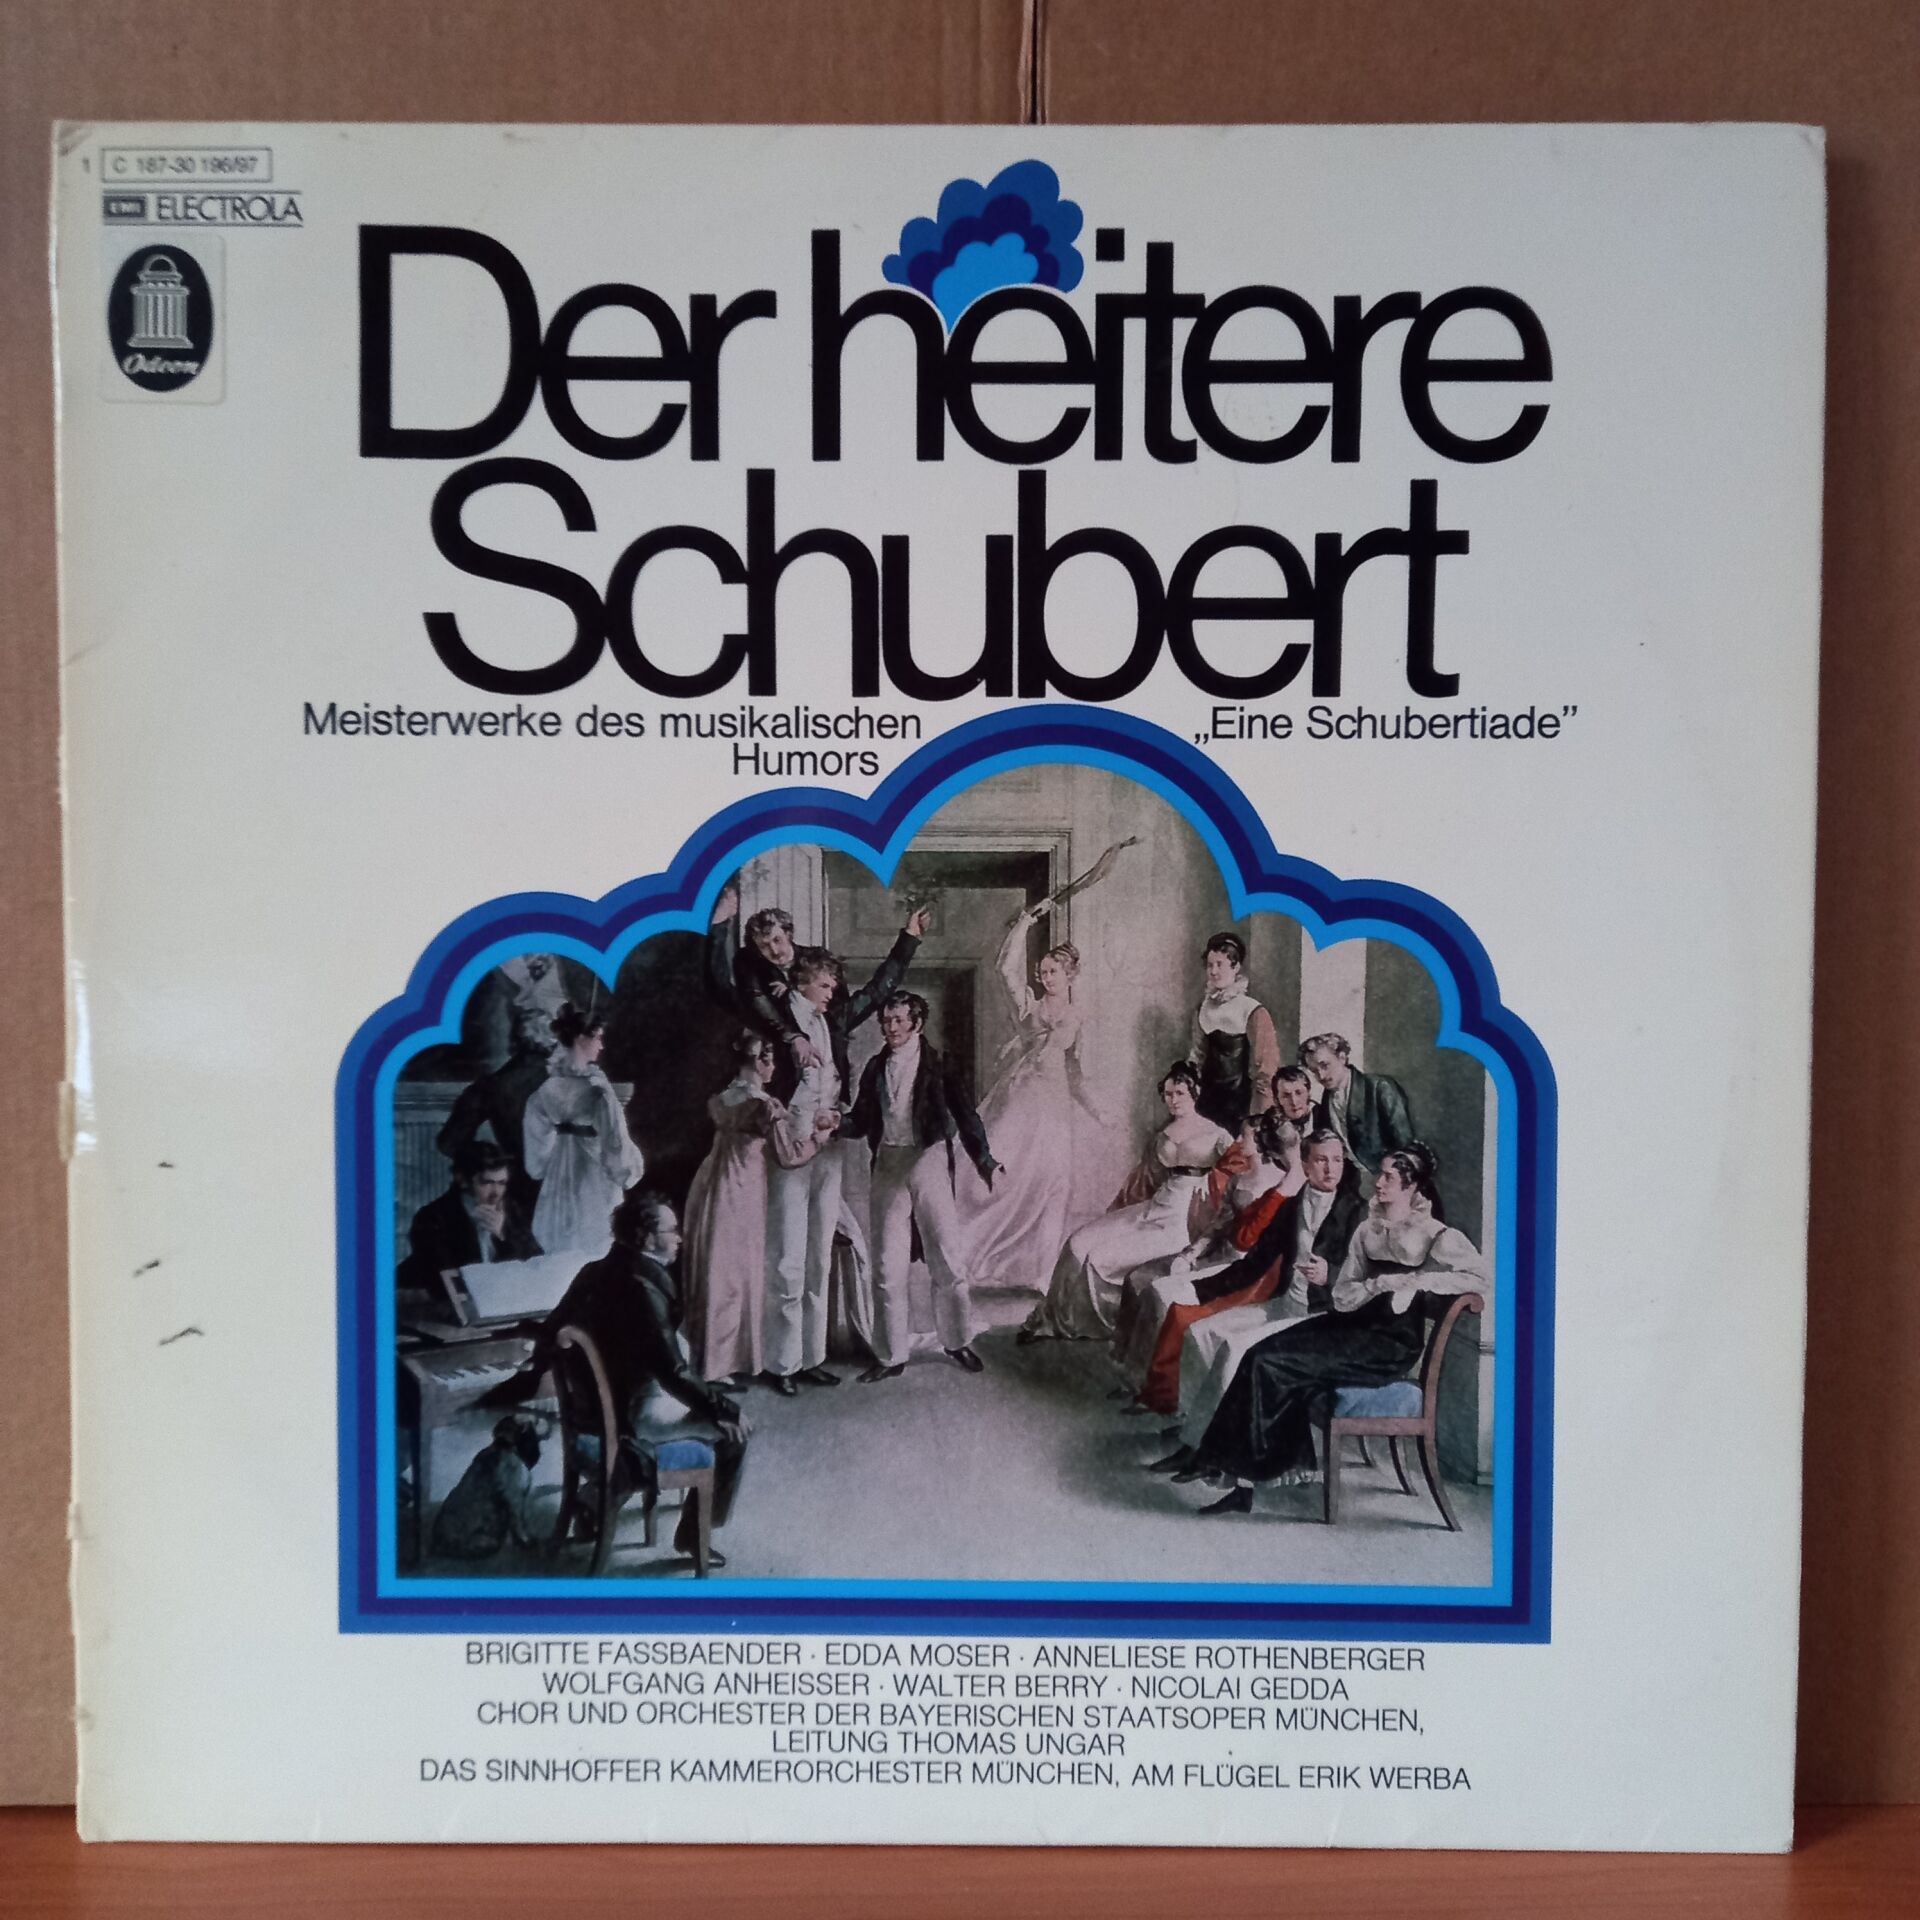 DER HEITERE SCHUBERT • MEISTERWERKE DES MUSIKALISCHEN HUMORS „EINE SCHUBERTIADE“ / BRIGITTE FASSBAENDER, EDDA MOSER, ANNELIESE ROTHENBERGER, WOLFGANG ANHEISSER, WALTER BERRY, NICOLAI GEDDA (1974) - 2LP 2.EL PLAK